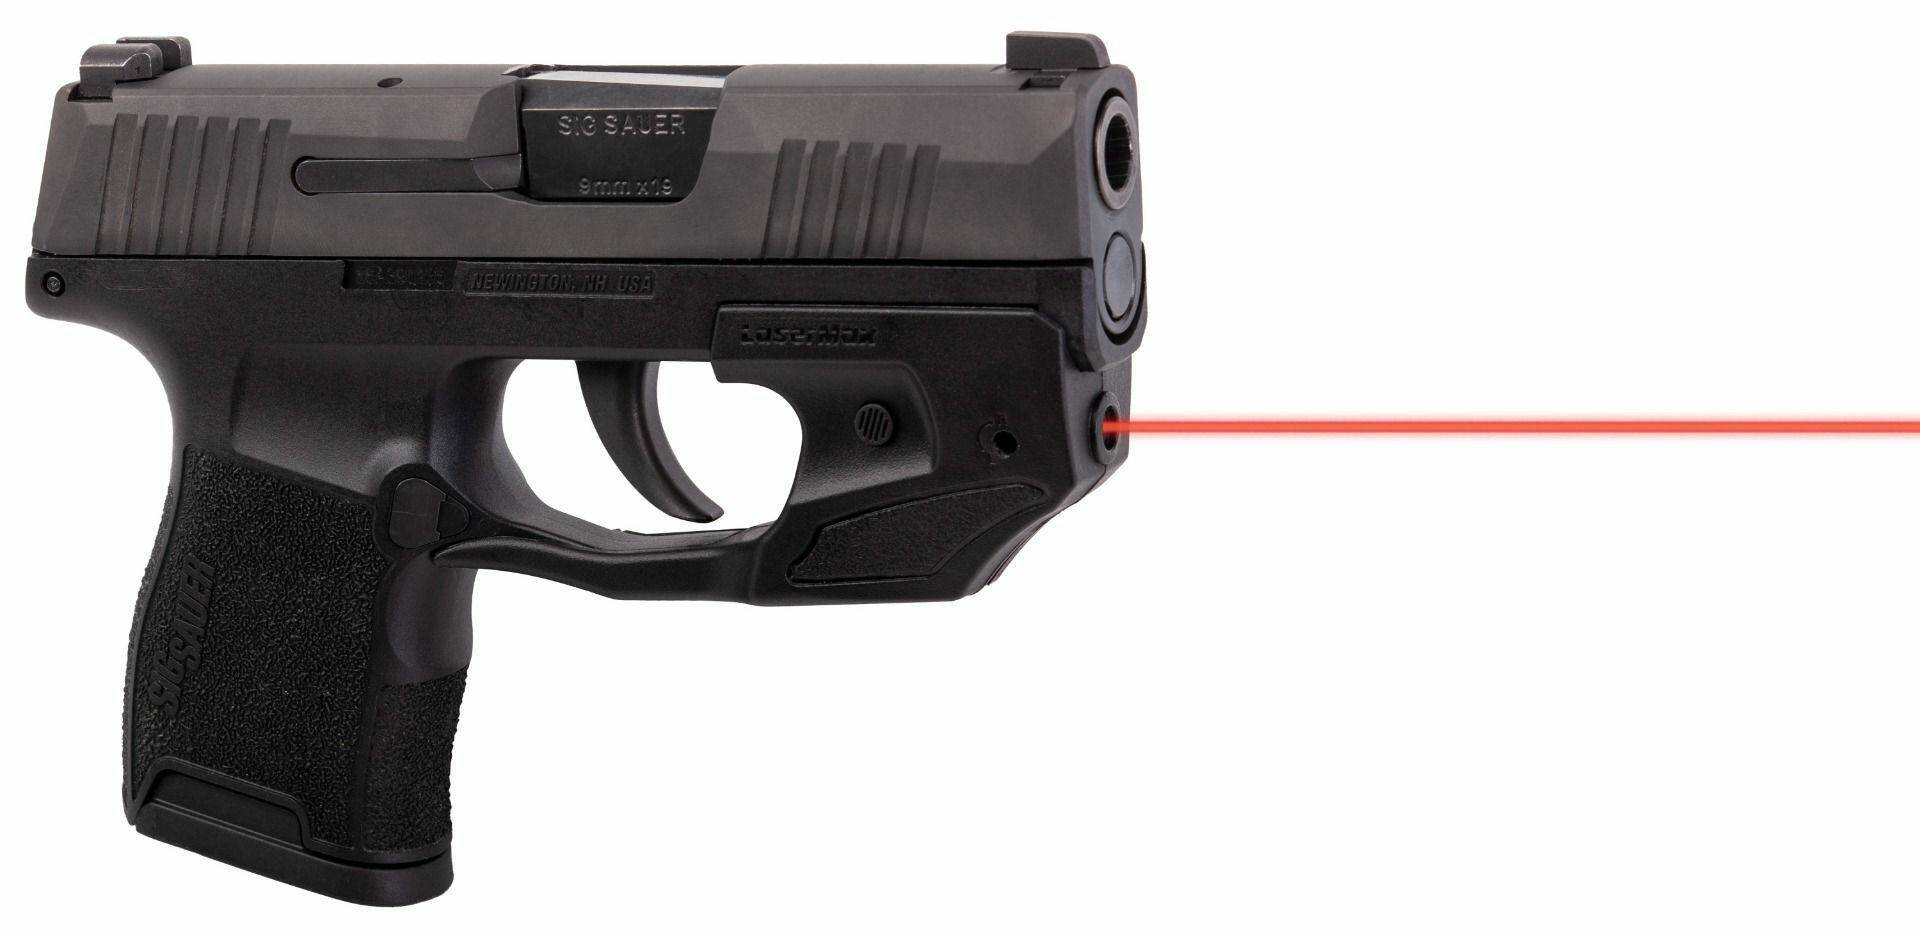 LASERMAX Pistol Laser Red